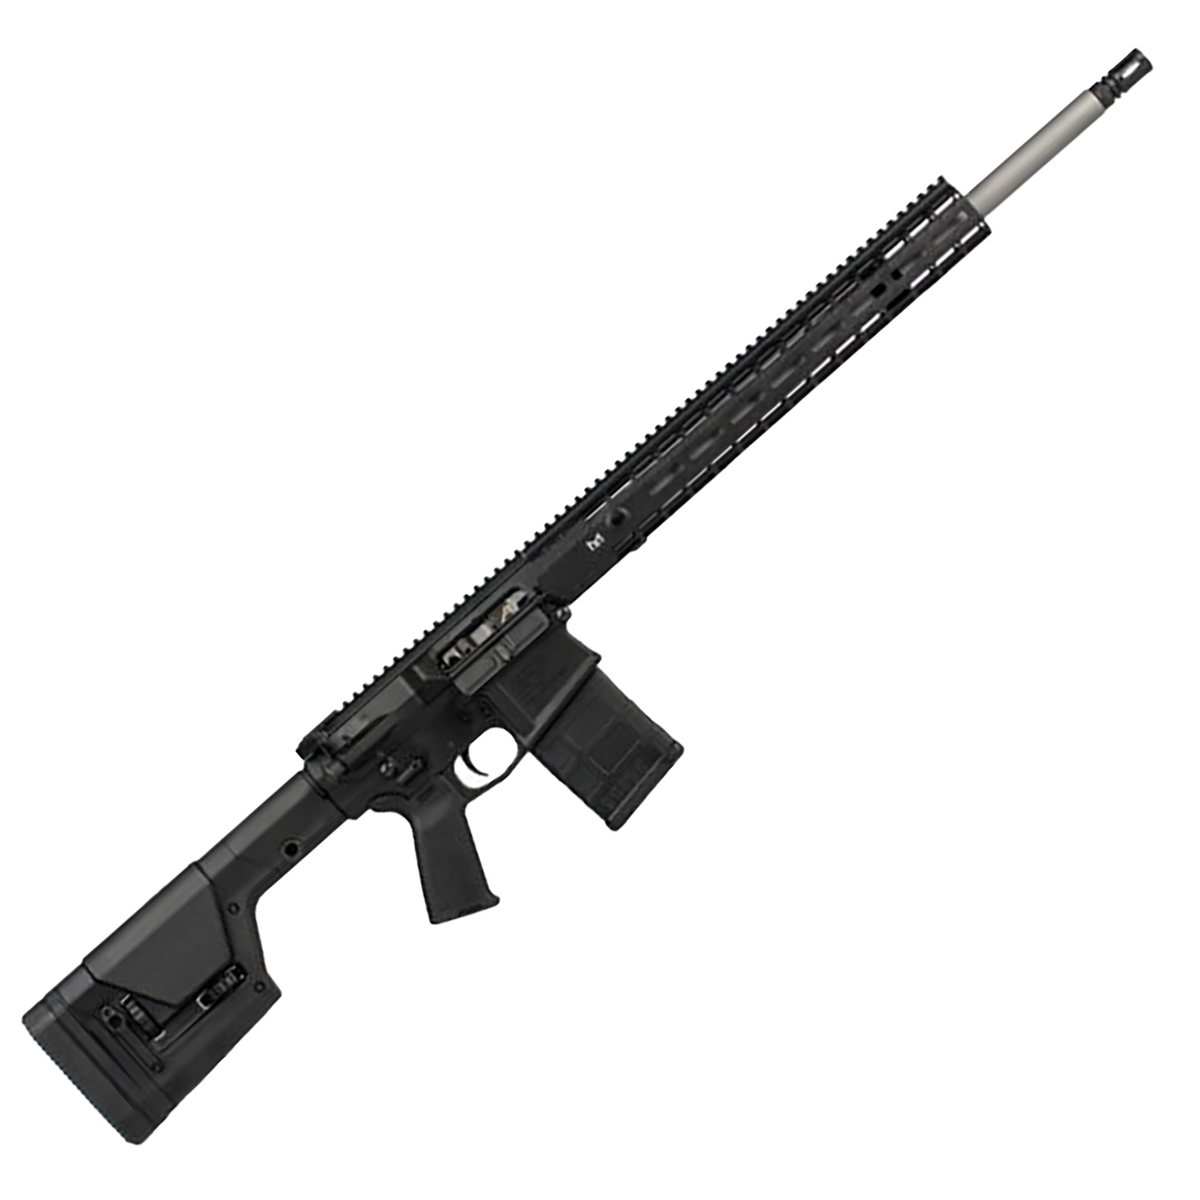 https://www.sportsmans.com/medias/aero-precision-m5e1-wenhanced-m-lok-65-creedmoor-18in-black-anodized-semi-automatic-modern-sporting-rifle-101-rounds-1847656-1.jpg?context=bWFzdGVyfGltYWdlc3wxMjkwODl8aW1hZ2UvanBlZ3xoOWIvaDQ2LzExNTQ3NDU1NDIyNDk0LzEyMDAtY29udmVyc2lvbkZvcm1hdF9iYXNlLWNvbnZlcnNpb25Gb3JtYXRfc213LTE4NDc2NTYtMS5qcGd8NDU0ZGViY2U1YmI3YTVkZmMwODNmZWJiNmI0N2ExM2Y4YWEzMTY5MjIwMTA0Y2E2NzAwODU1YTFhYzEzZjVkMA